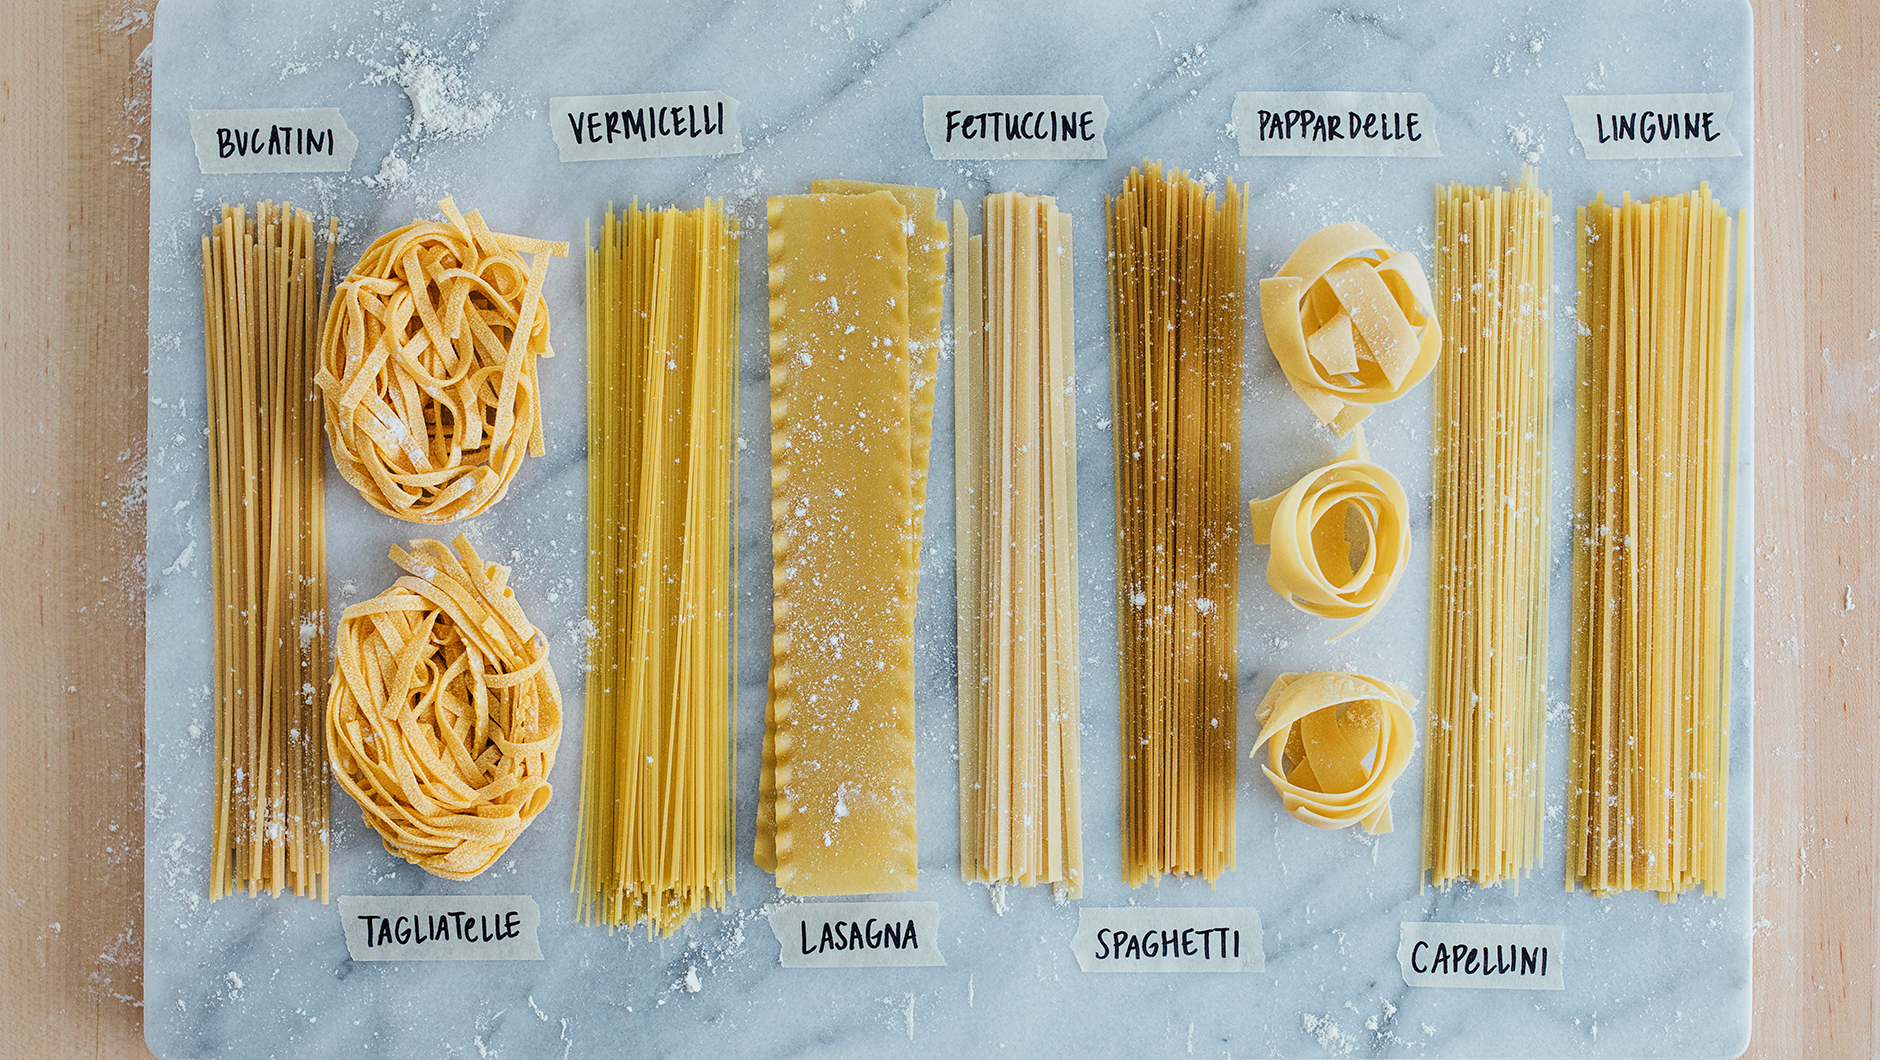 The Pasta Shapes Glossary